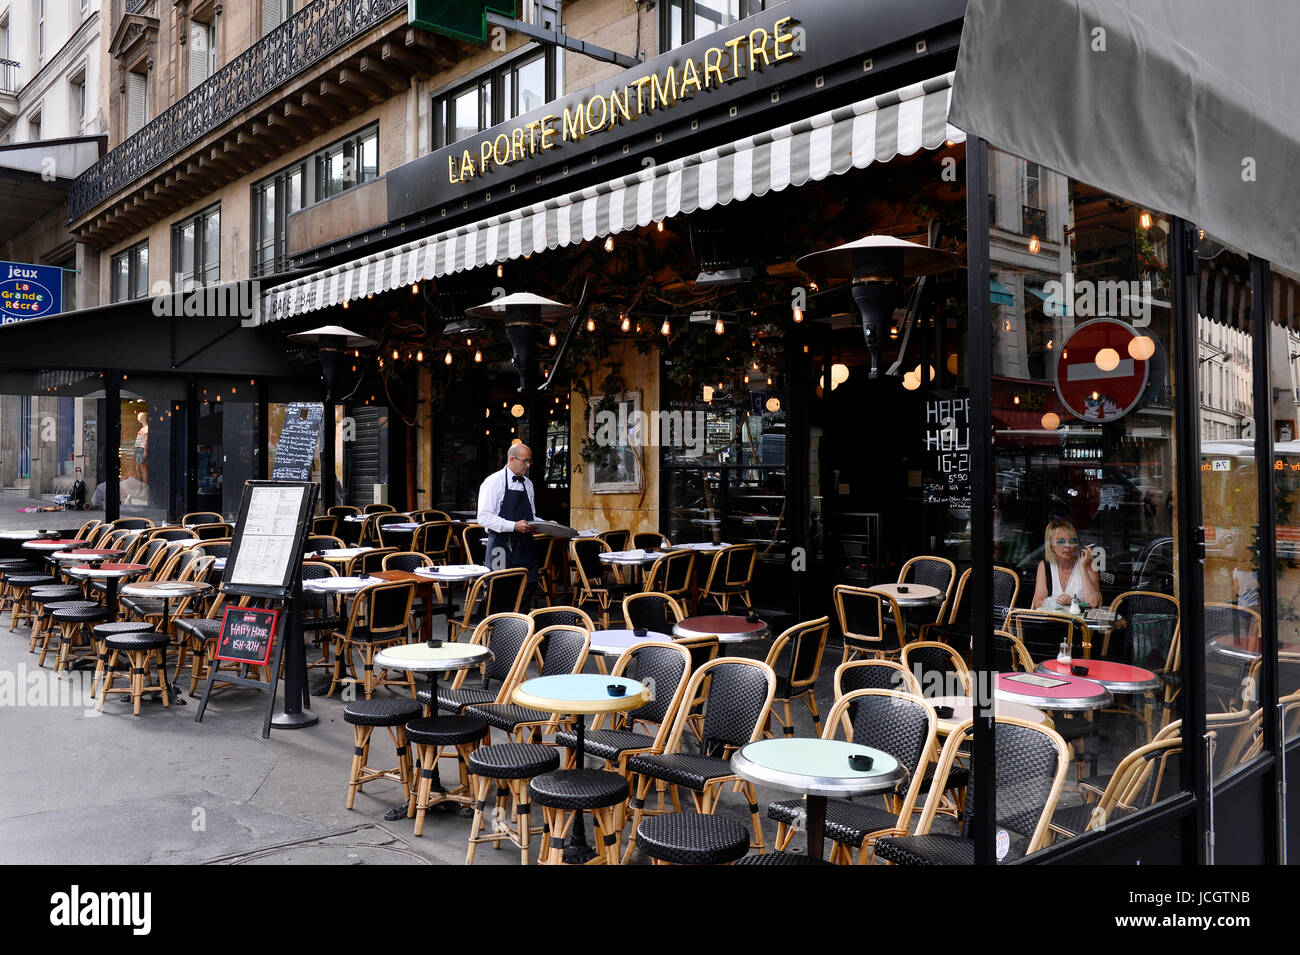 La Porte Montmartre Café, Paris, France Stock Photo: 145429463 - Alamy